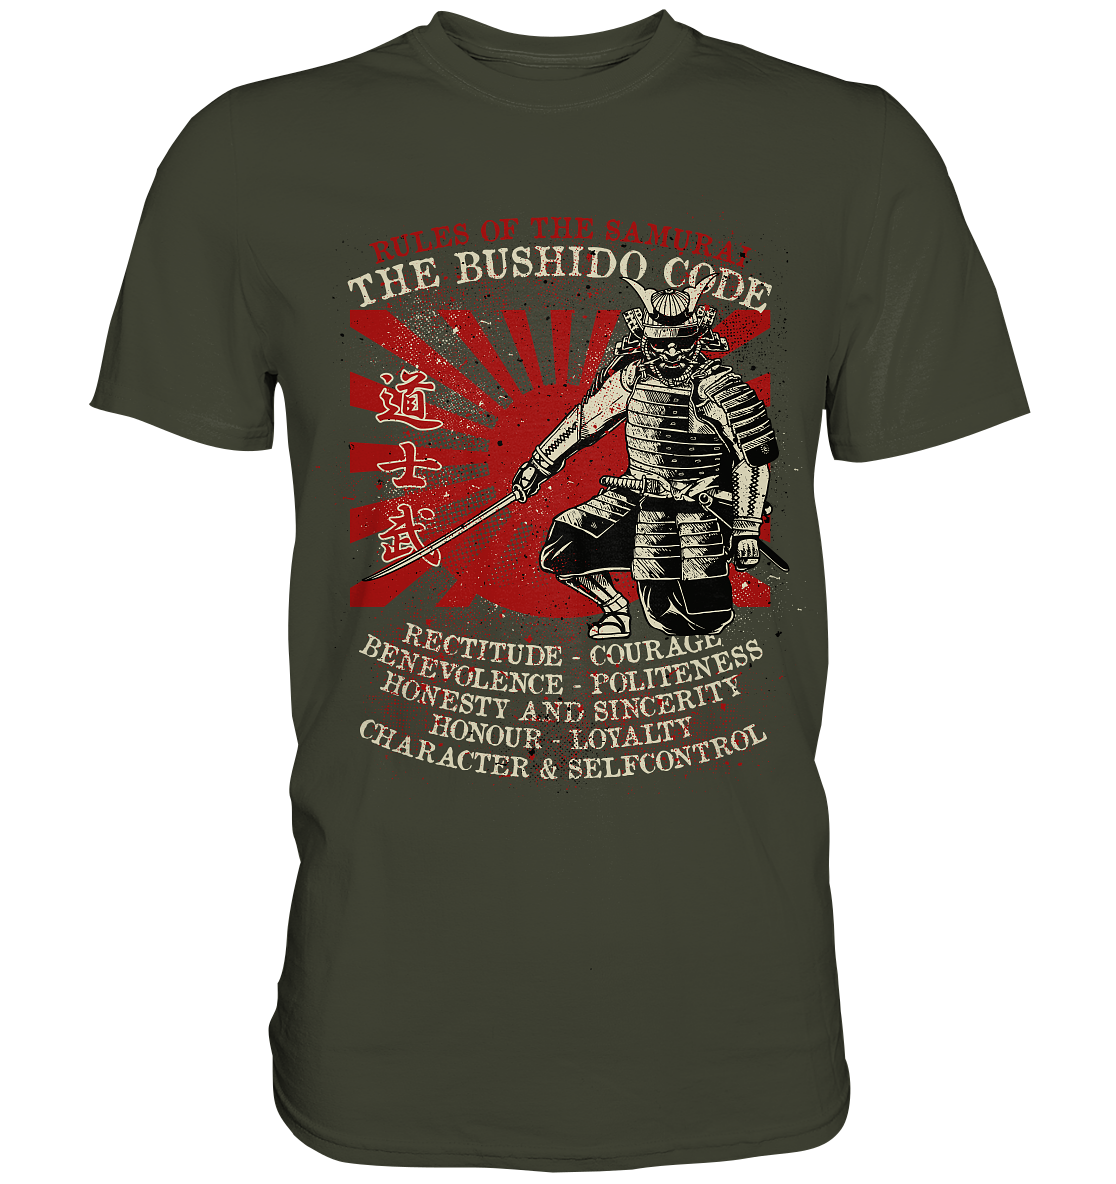 Rules of the Samurai  - Premium Shirt